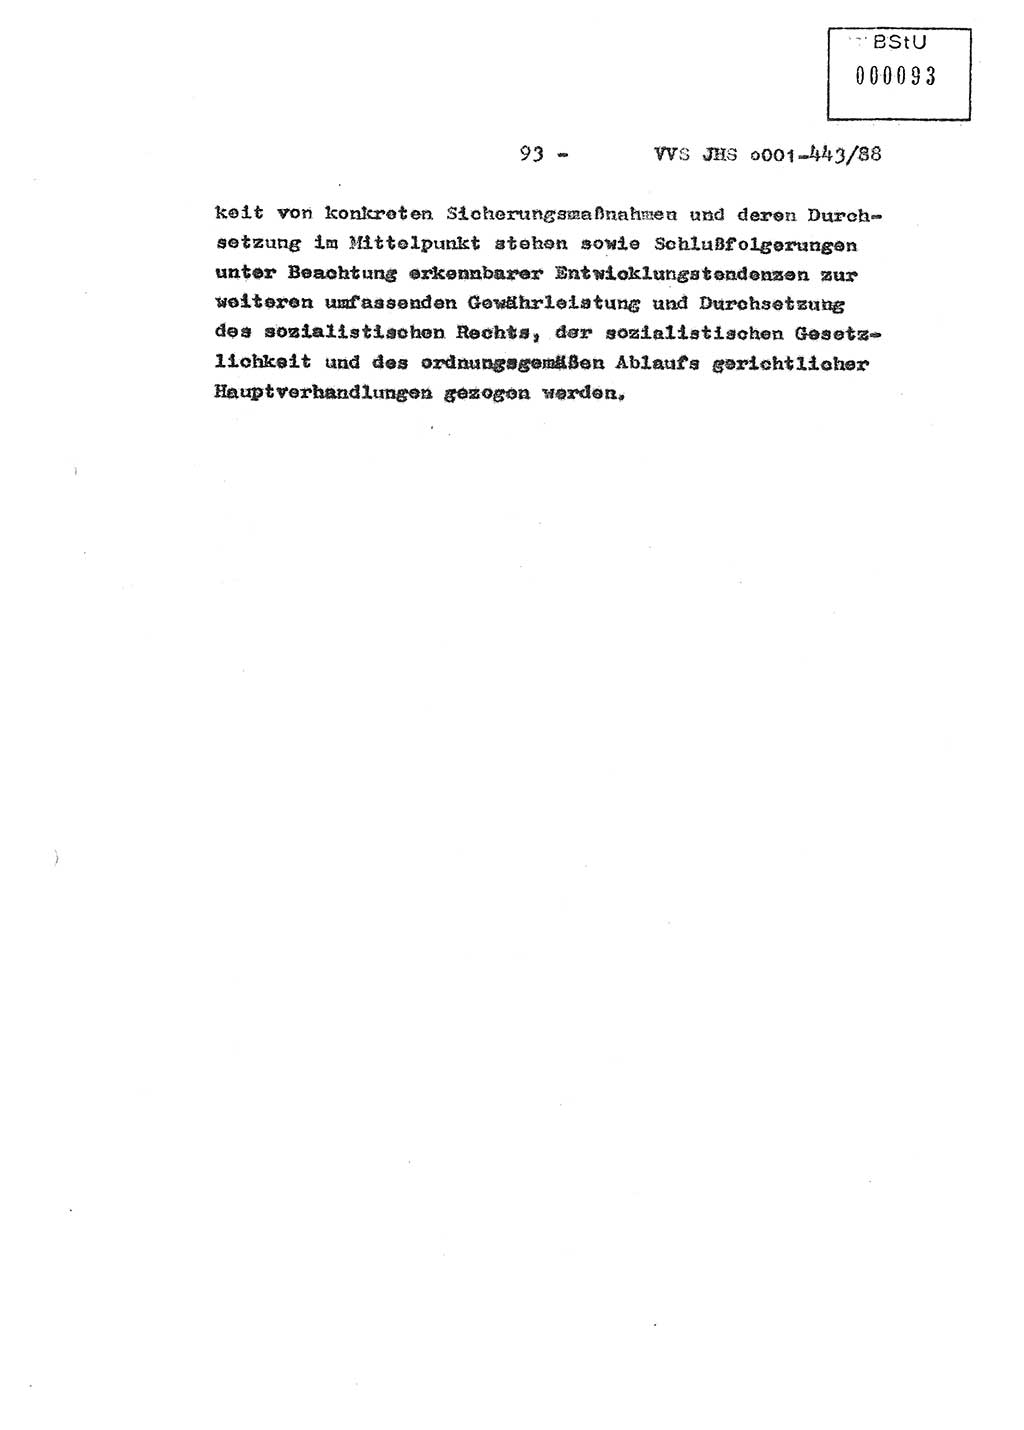 Diplomarbeit Hauptmann Michael Rast (Abt. ⅩⅣ), Major Bernd Rahaus (Abt. ⅩⅣ), Ministerium für Staatssicherheit (MfS) [Deutsche Demokratische Republik (DDR)], Juristische Hochschule (JHS), Vertrauliche Verschlußsache (VVS) o001-443/88, Potsdam 1988, Seite 93 (Dipl.-Arb. MfS DDR JHS VVS o001-443/88 1988, S. 93)